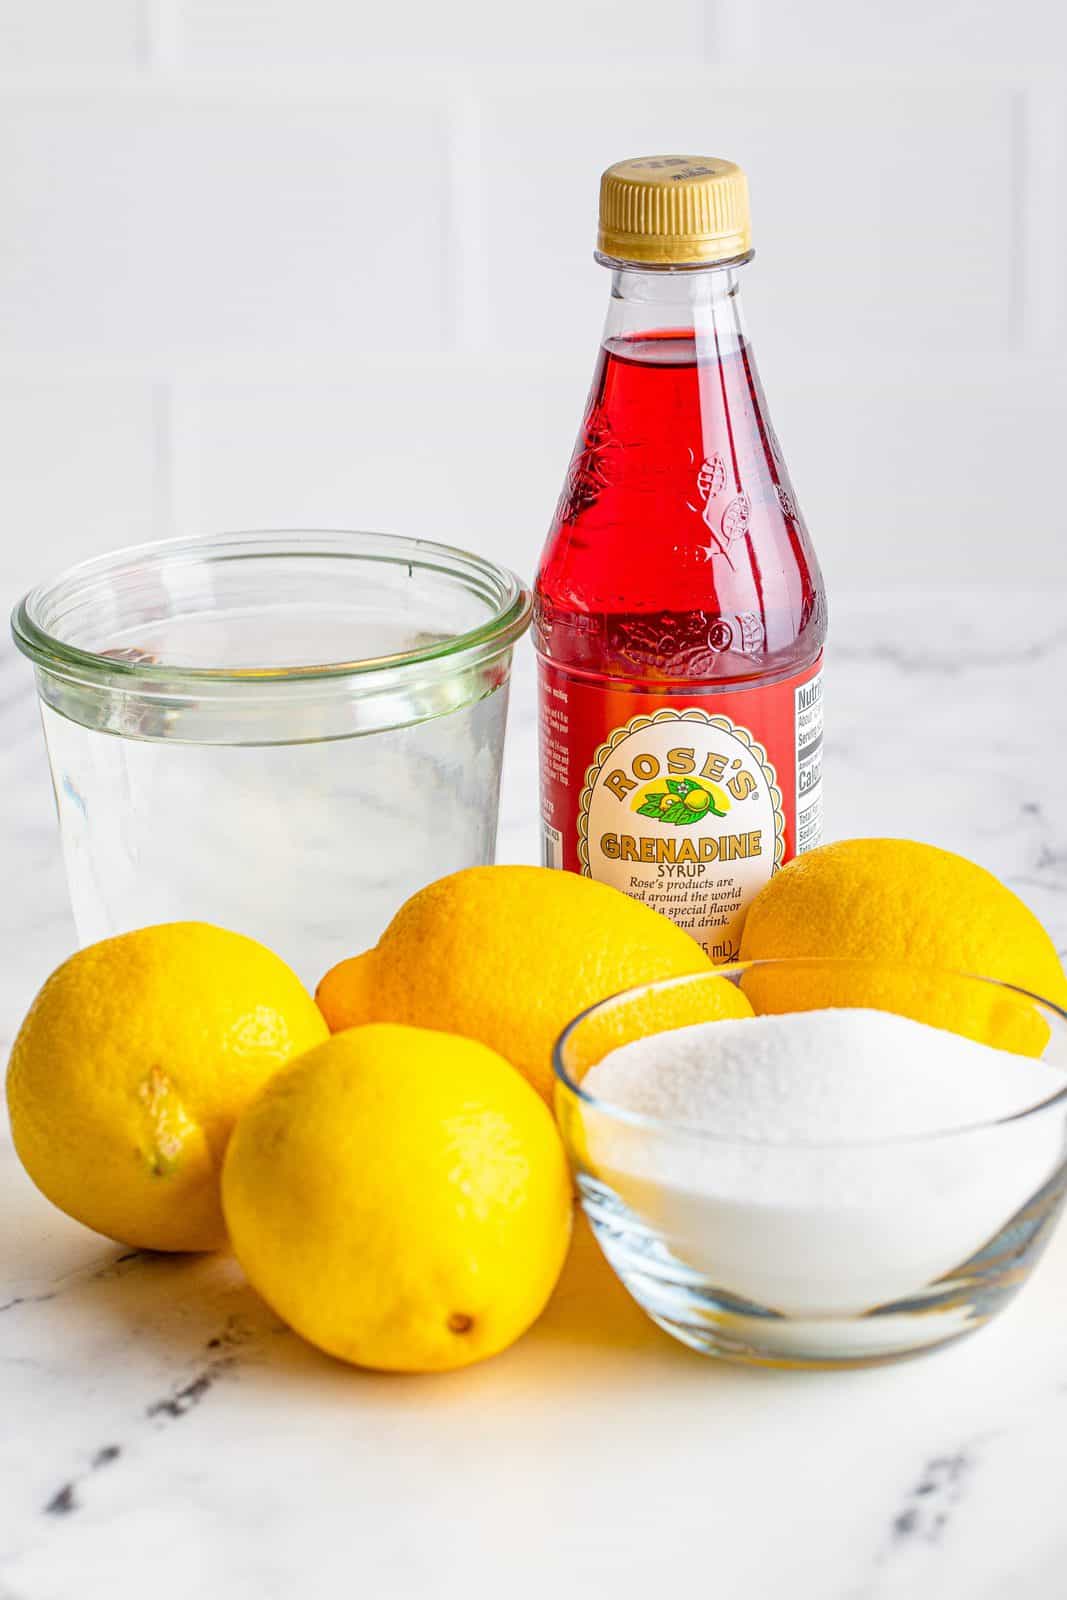 Ingredients needed to make Homemade Pink Lemonade: water, sugar, lemon juice and grenadine.